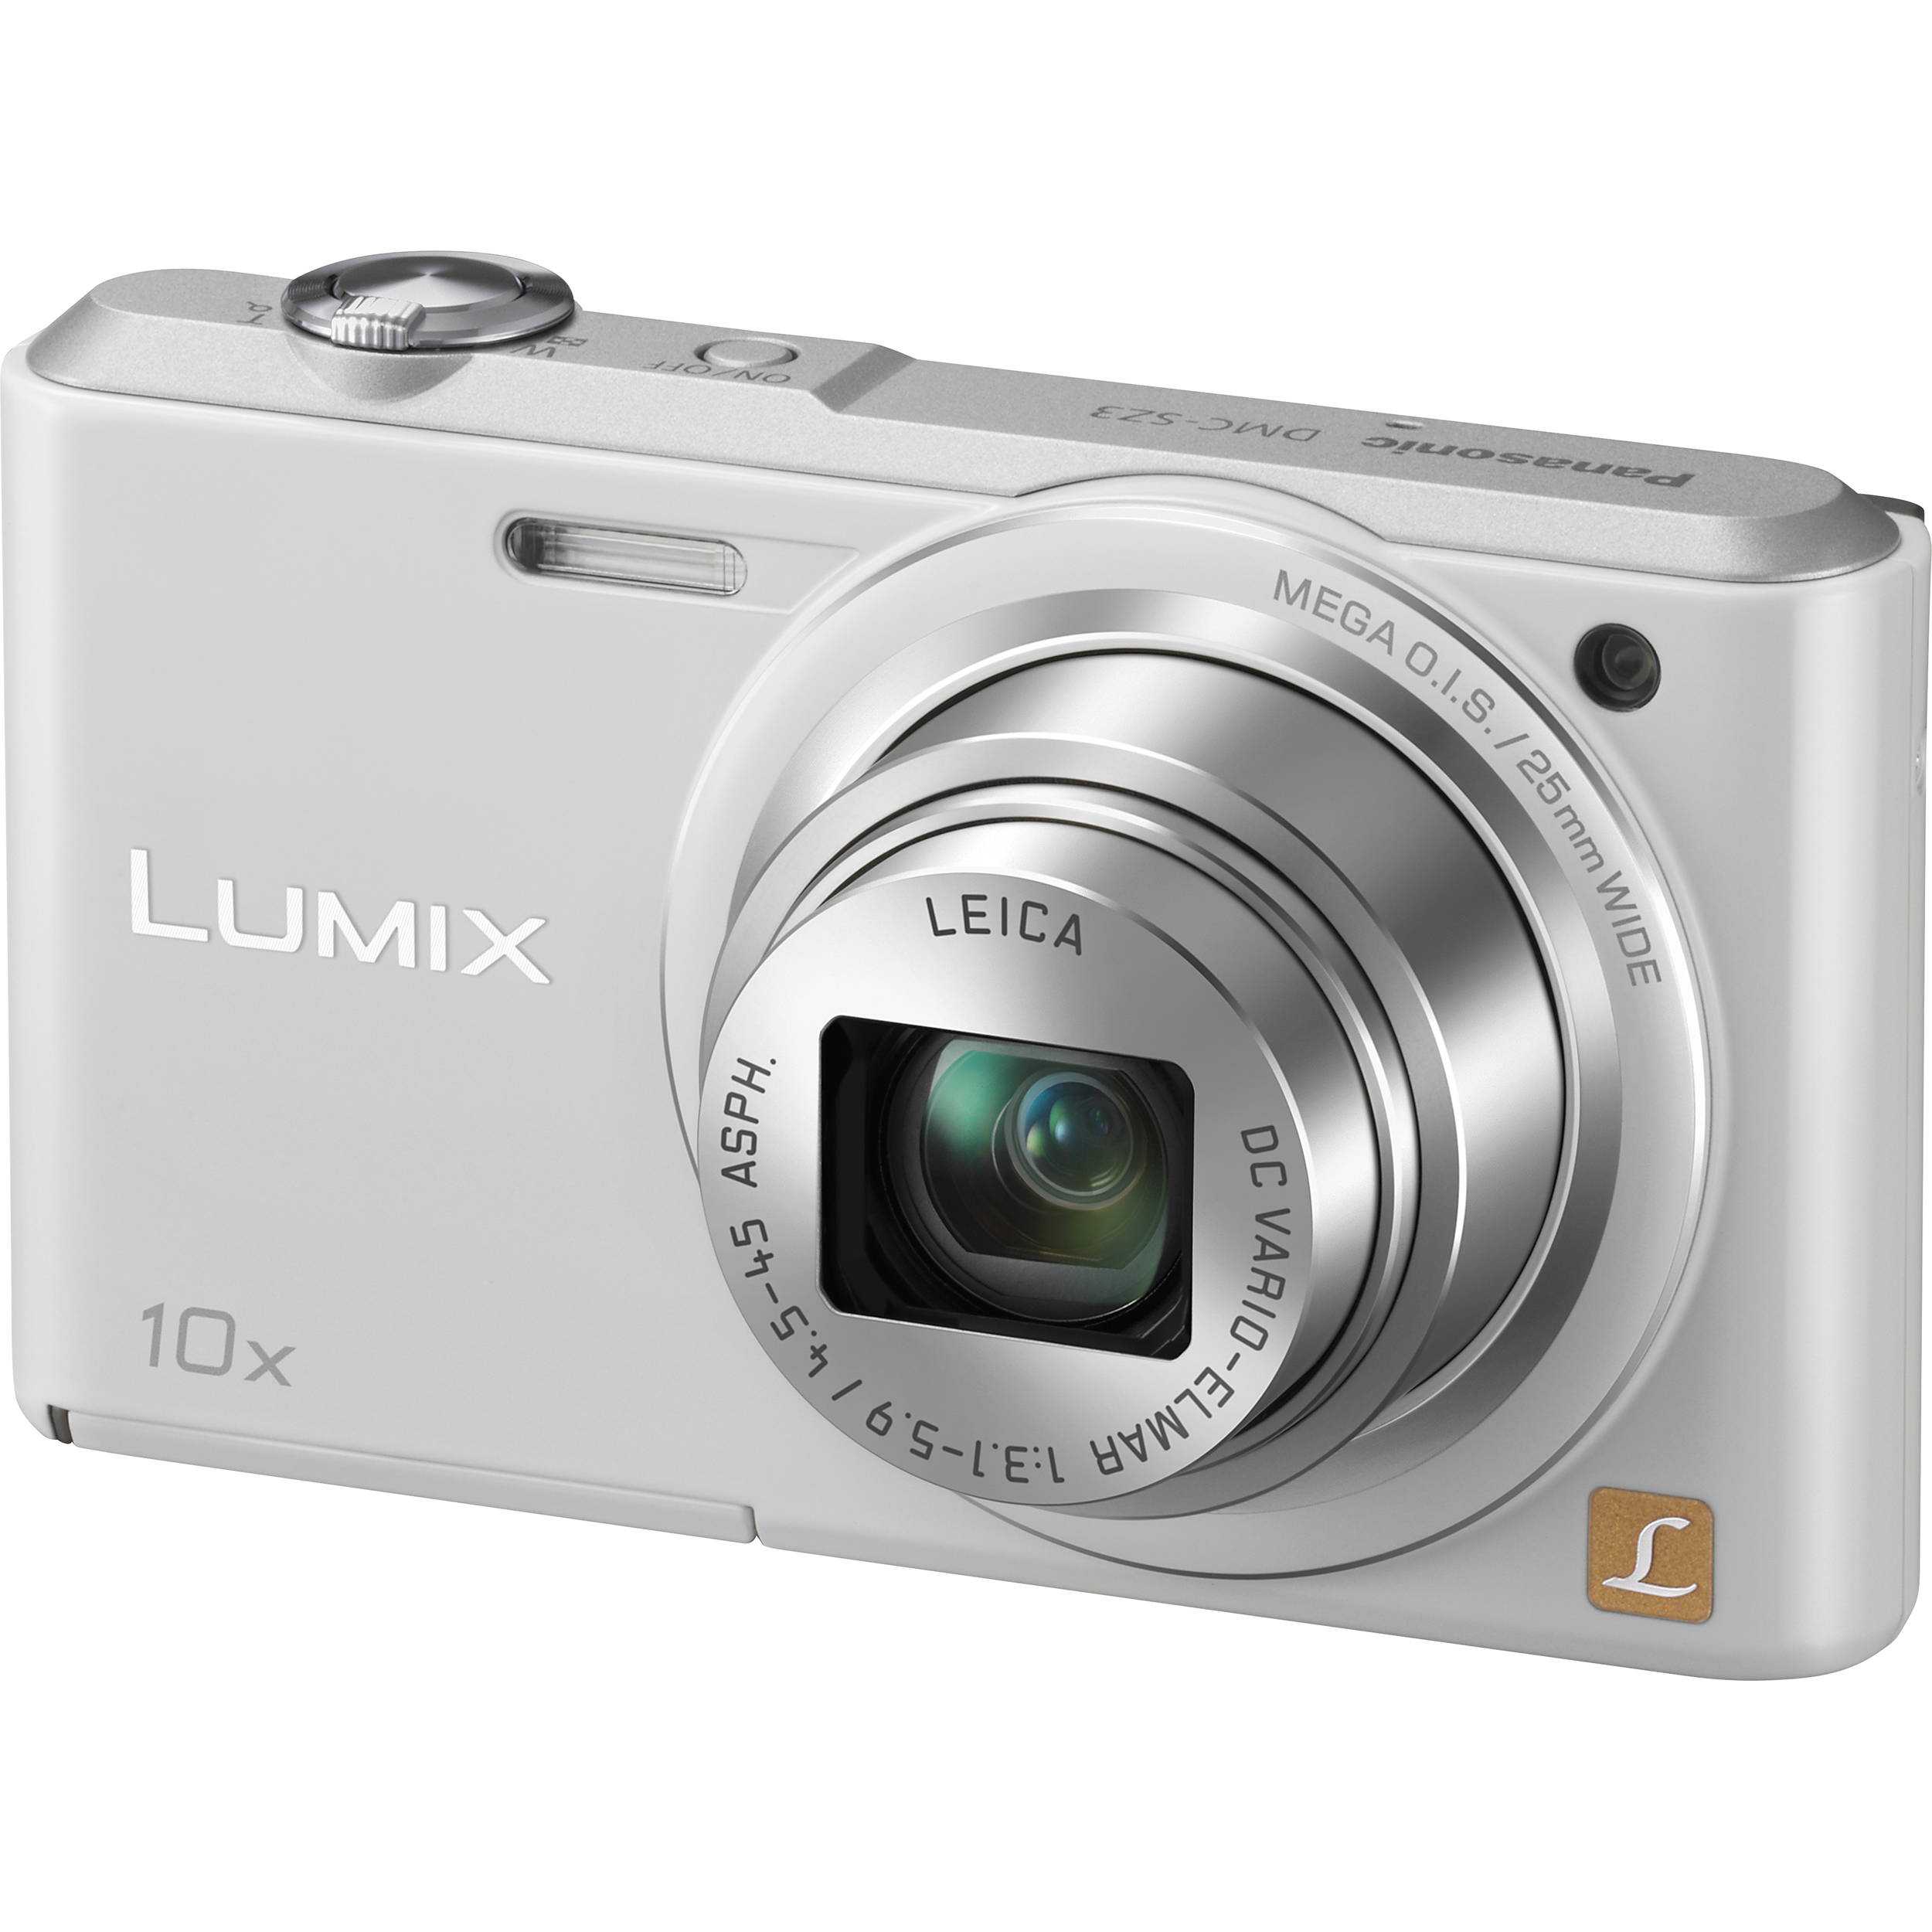 Цифровой фотоаппарат Panasonic Lumix DMC-SZ1 - подробные характеристики обзоры видео фото Цены в интернет-магазинах где можно купить цифровую фотоаппарат Panasonic Lumix DMC-SZ1